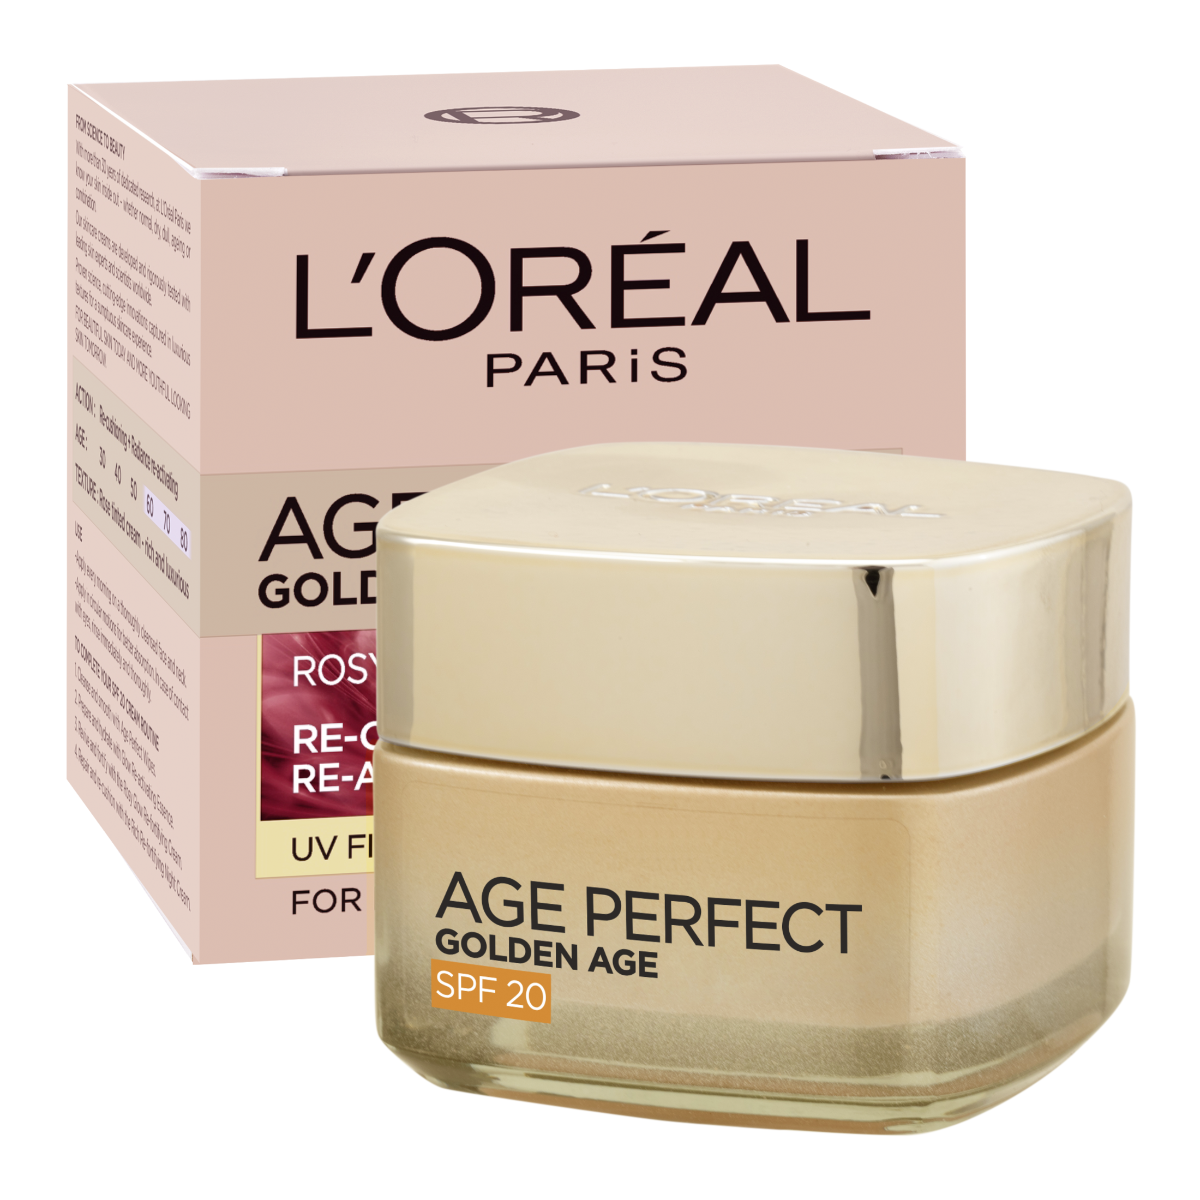 Loréal Paris Age Perfect Golden Age Rosy Re-Fortifying denní krém 50 ml Loréal Paris